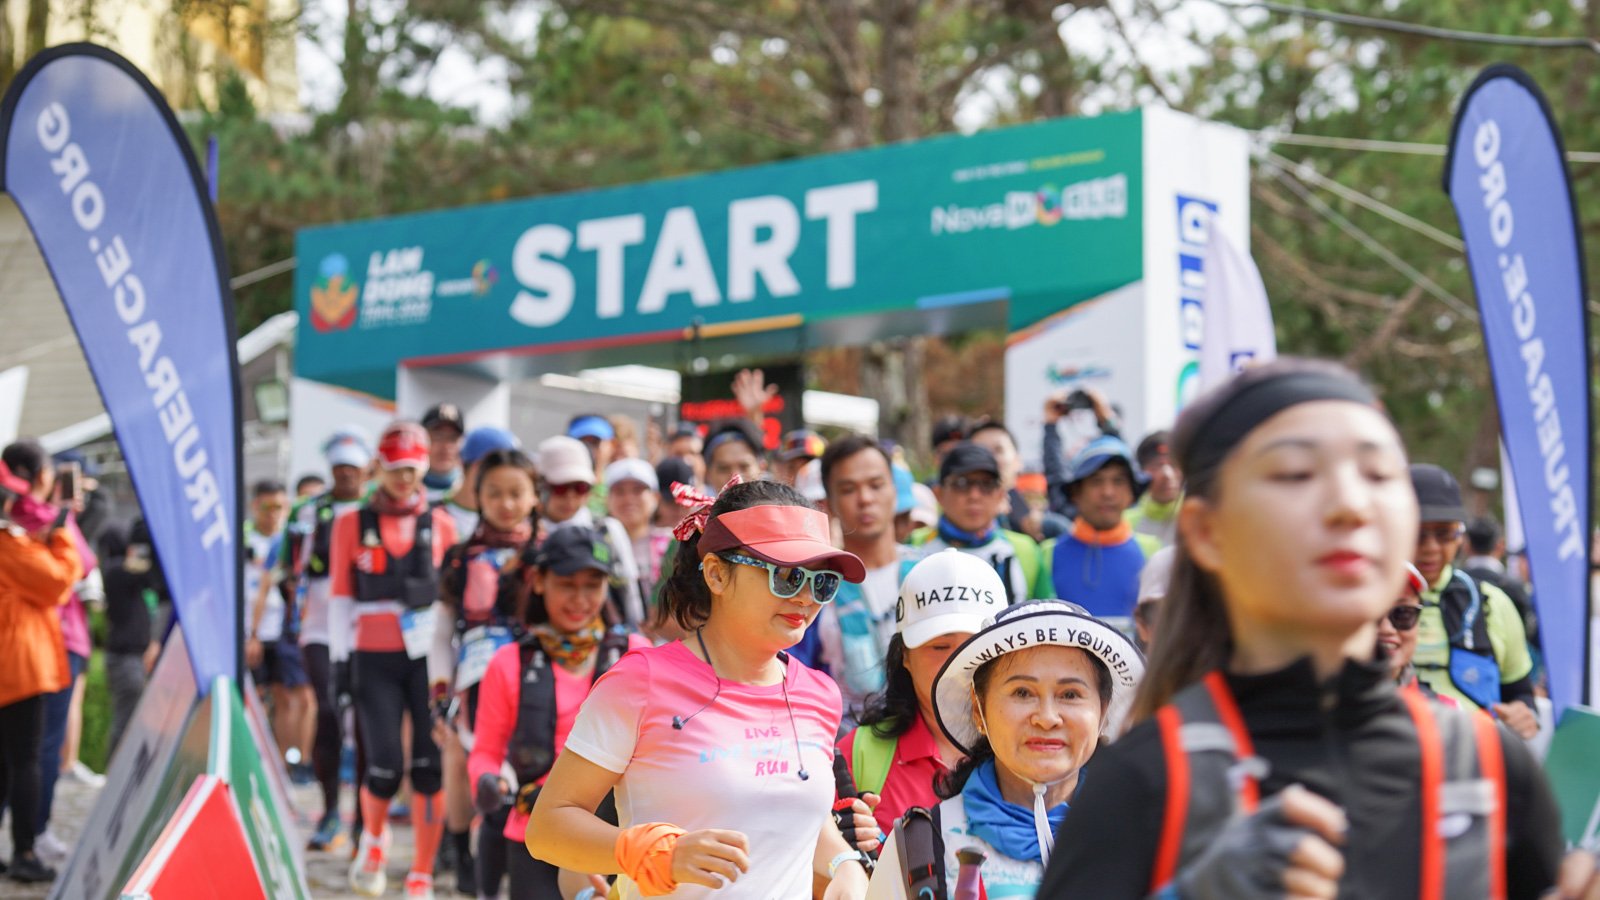 Giải chạy địa hình Lâm Đồng Trail 2022 thông điệp “Về Với Thiên Nhiên diễn ra trong 2 ngày 12 & 1311 tại TTC-World Thung Lũng Tình Yêu